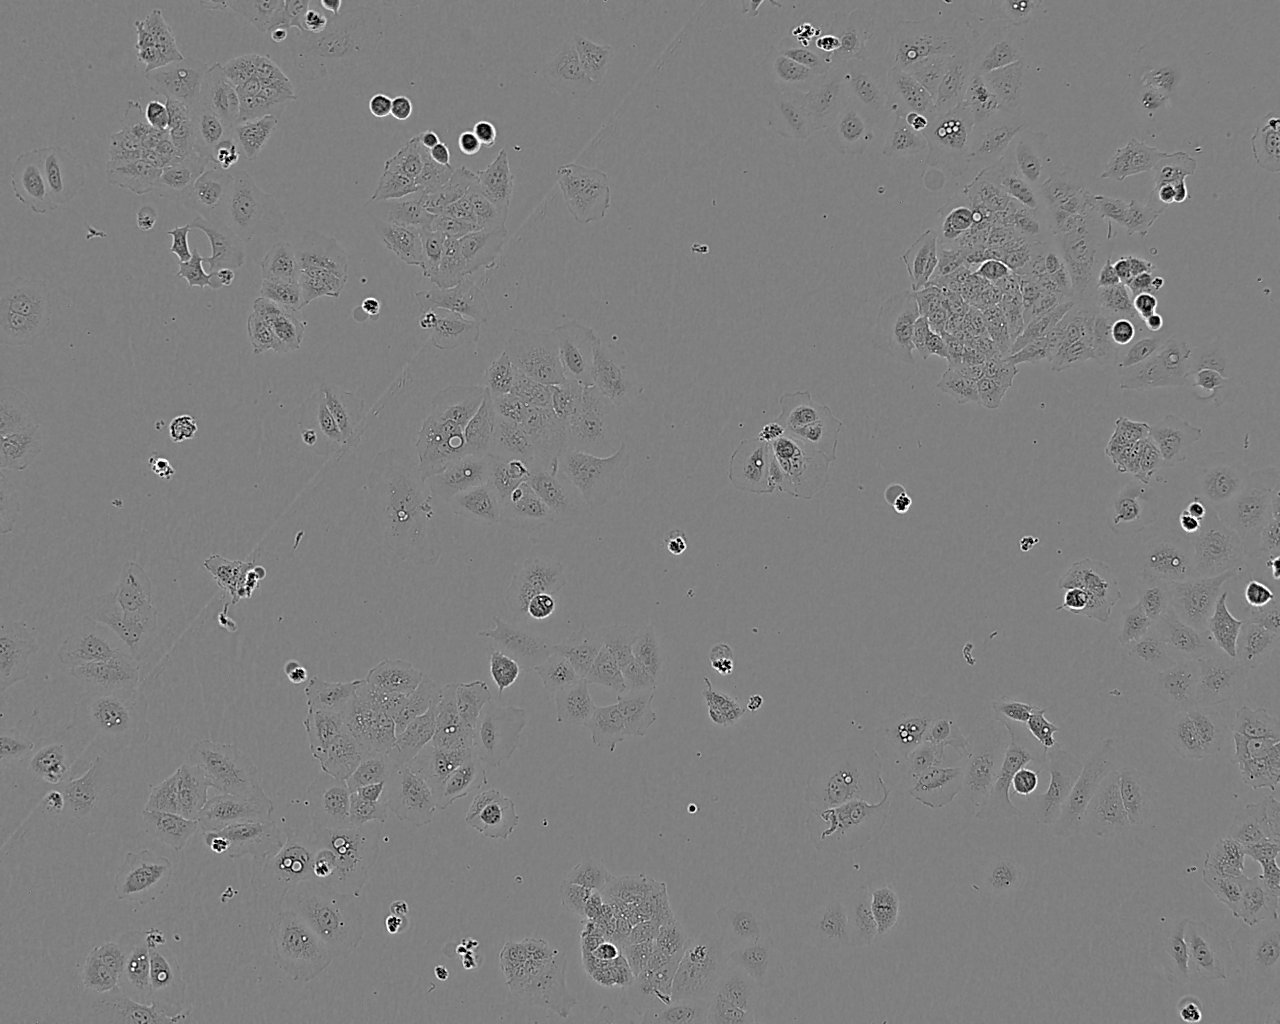 DiFi epithelioid cells人结直肠癌细胞系,DiFi epithelioid cells